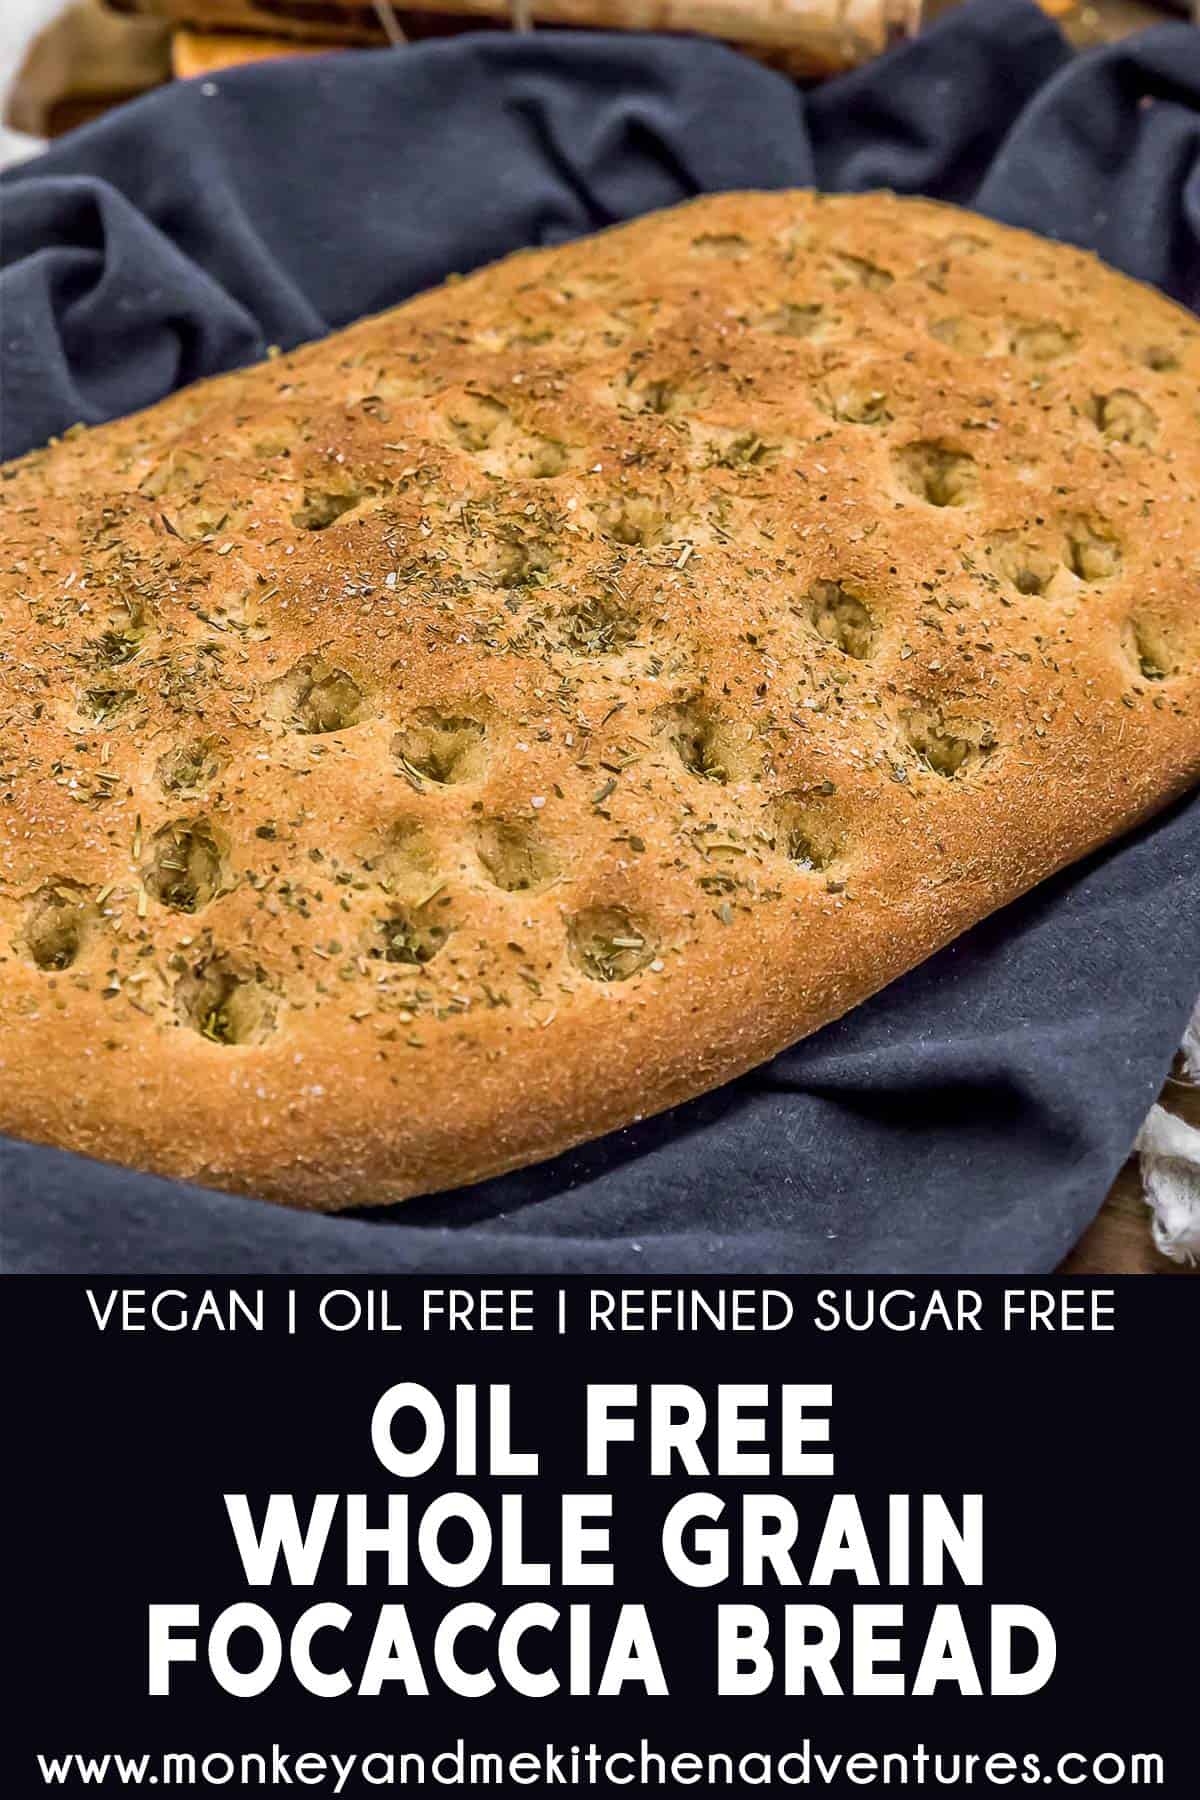 Oil Free Whole Grain Focaccia Bread with text description